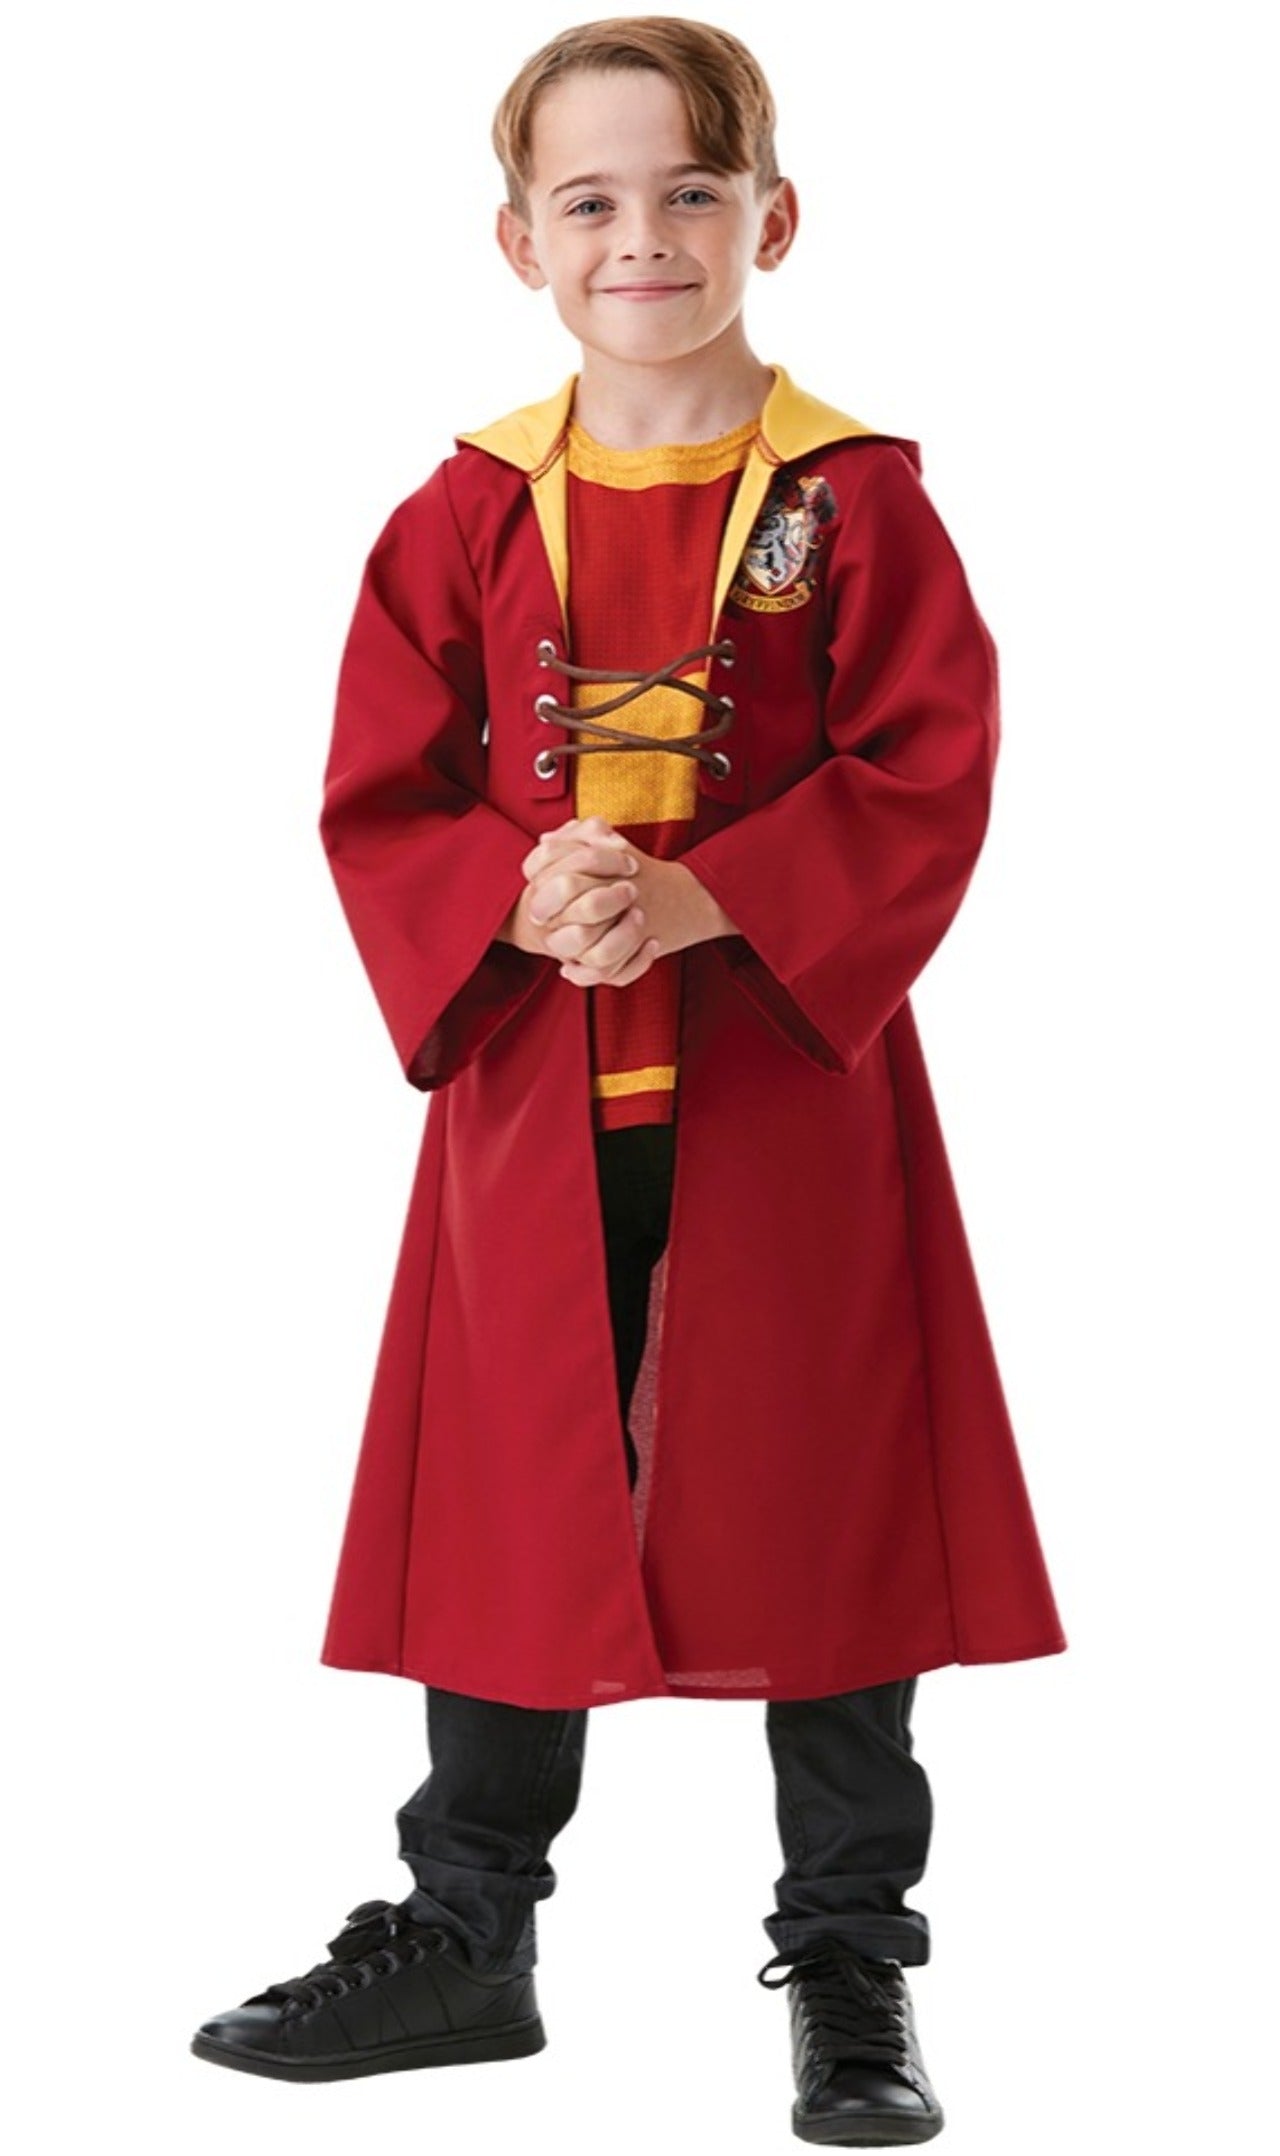 Costume da Harry Potter™ Quidditch per bambino